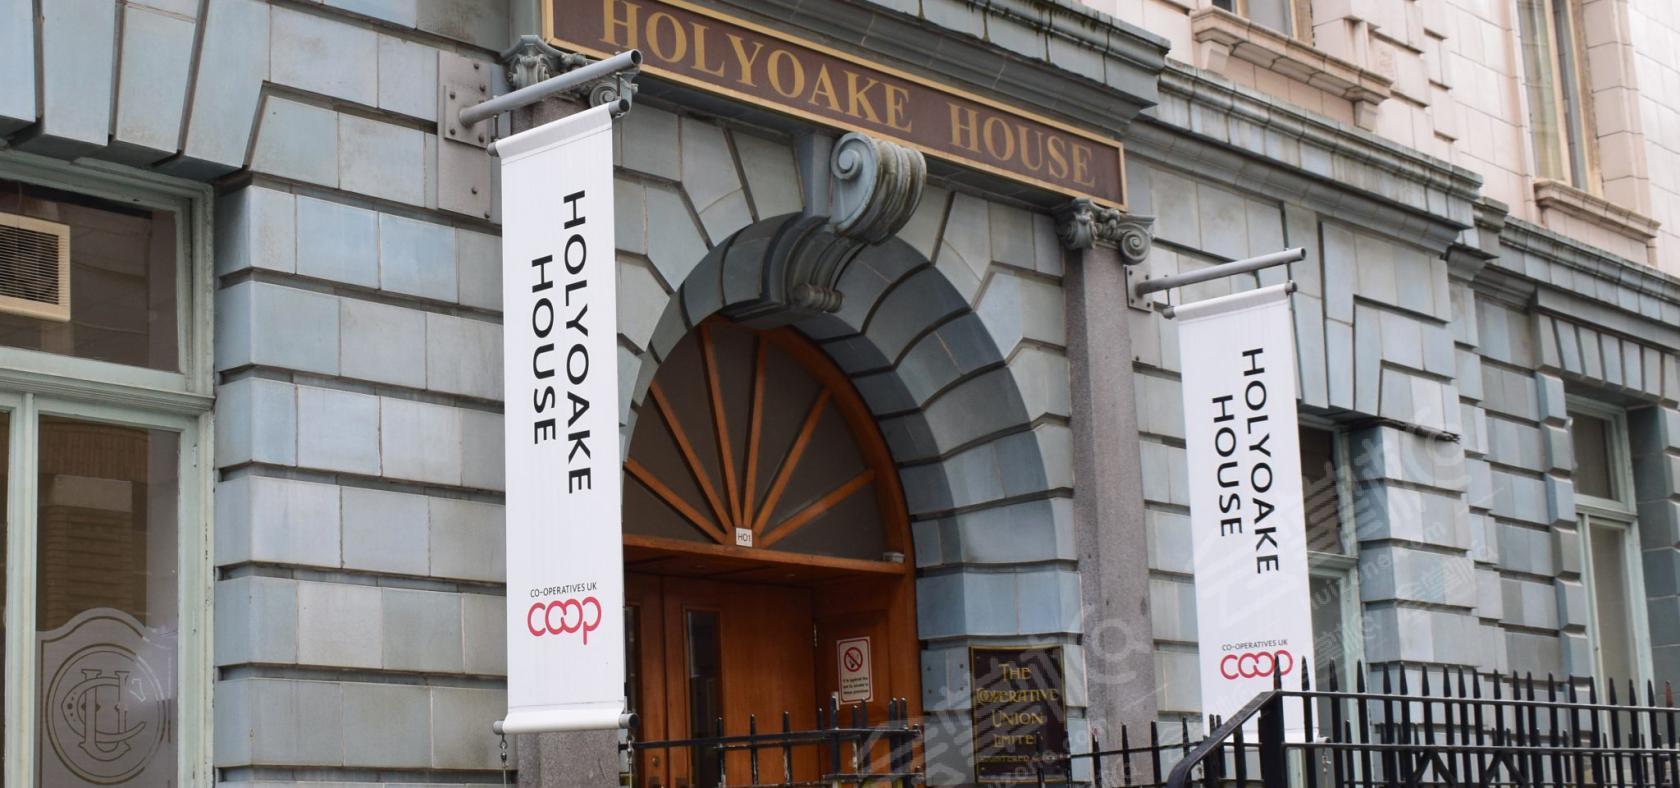 Holyoake House | Co-operatives UK